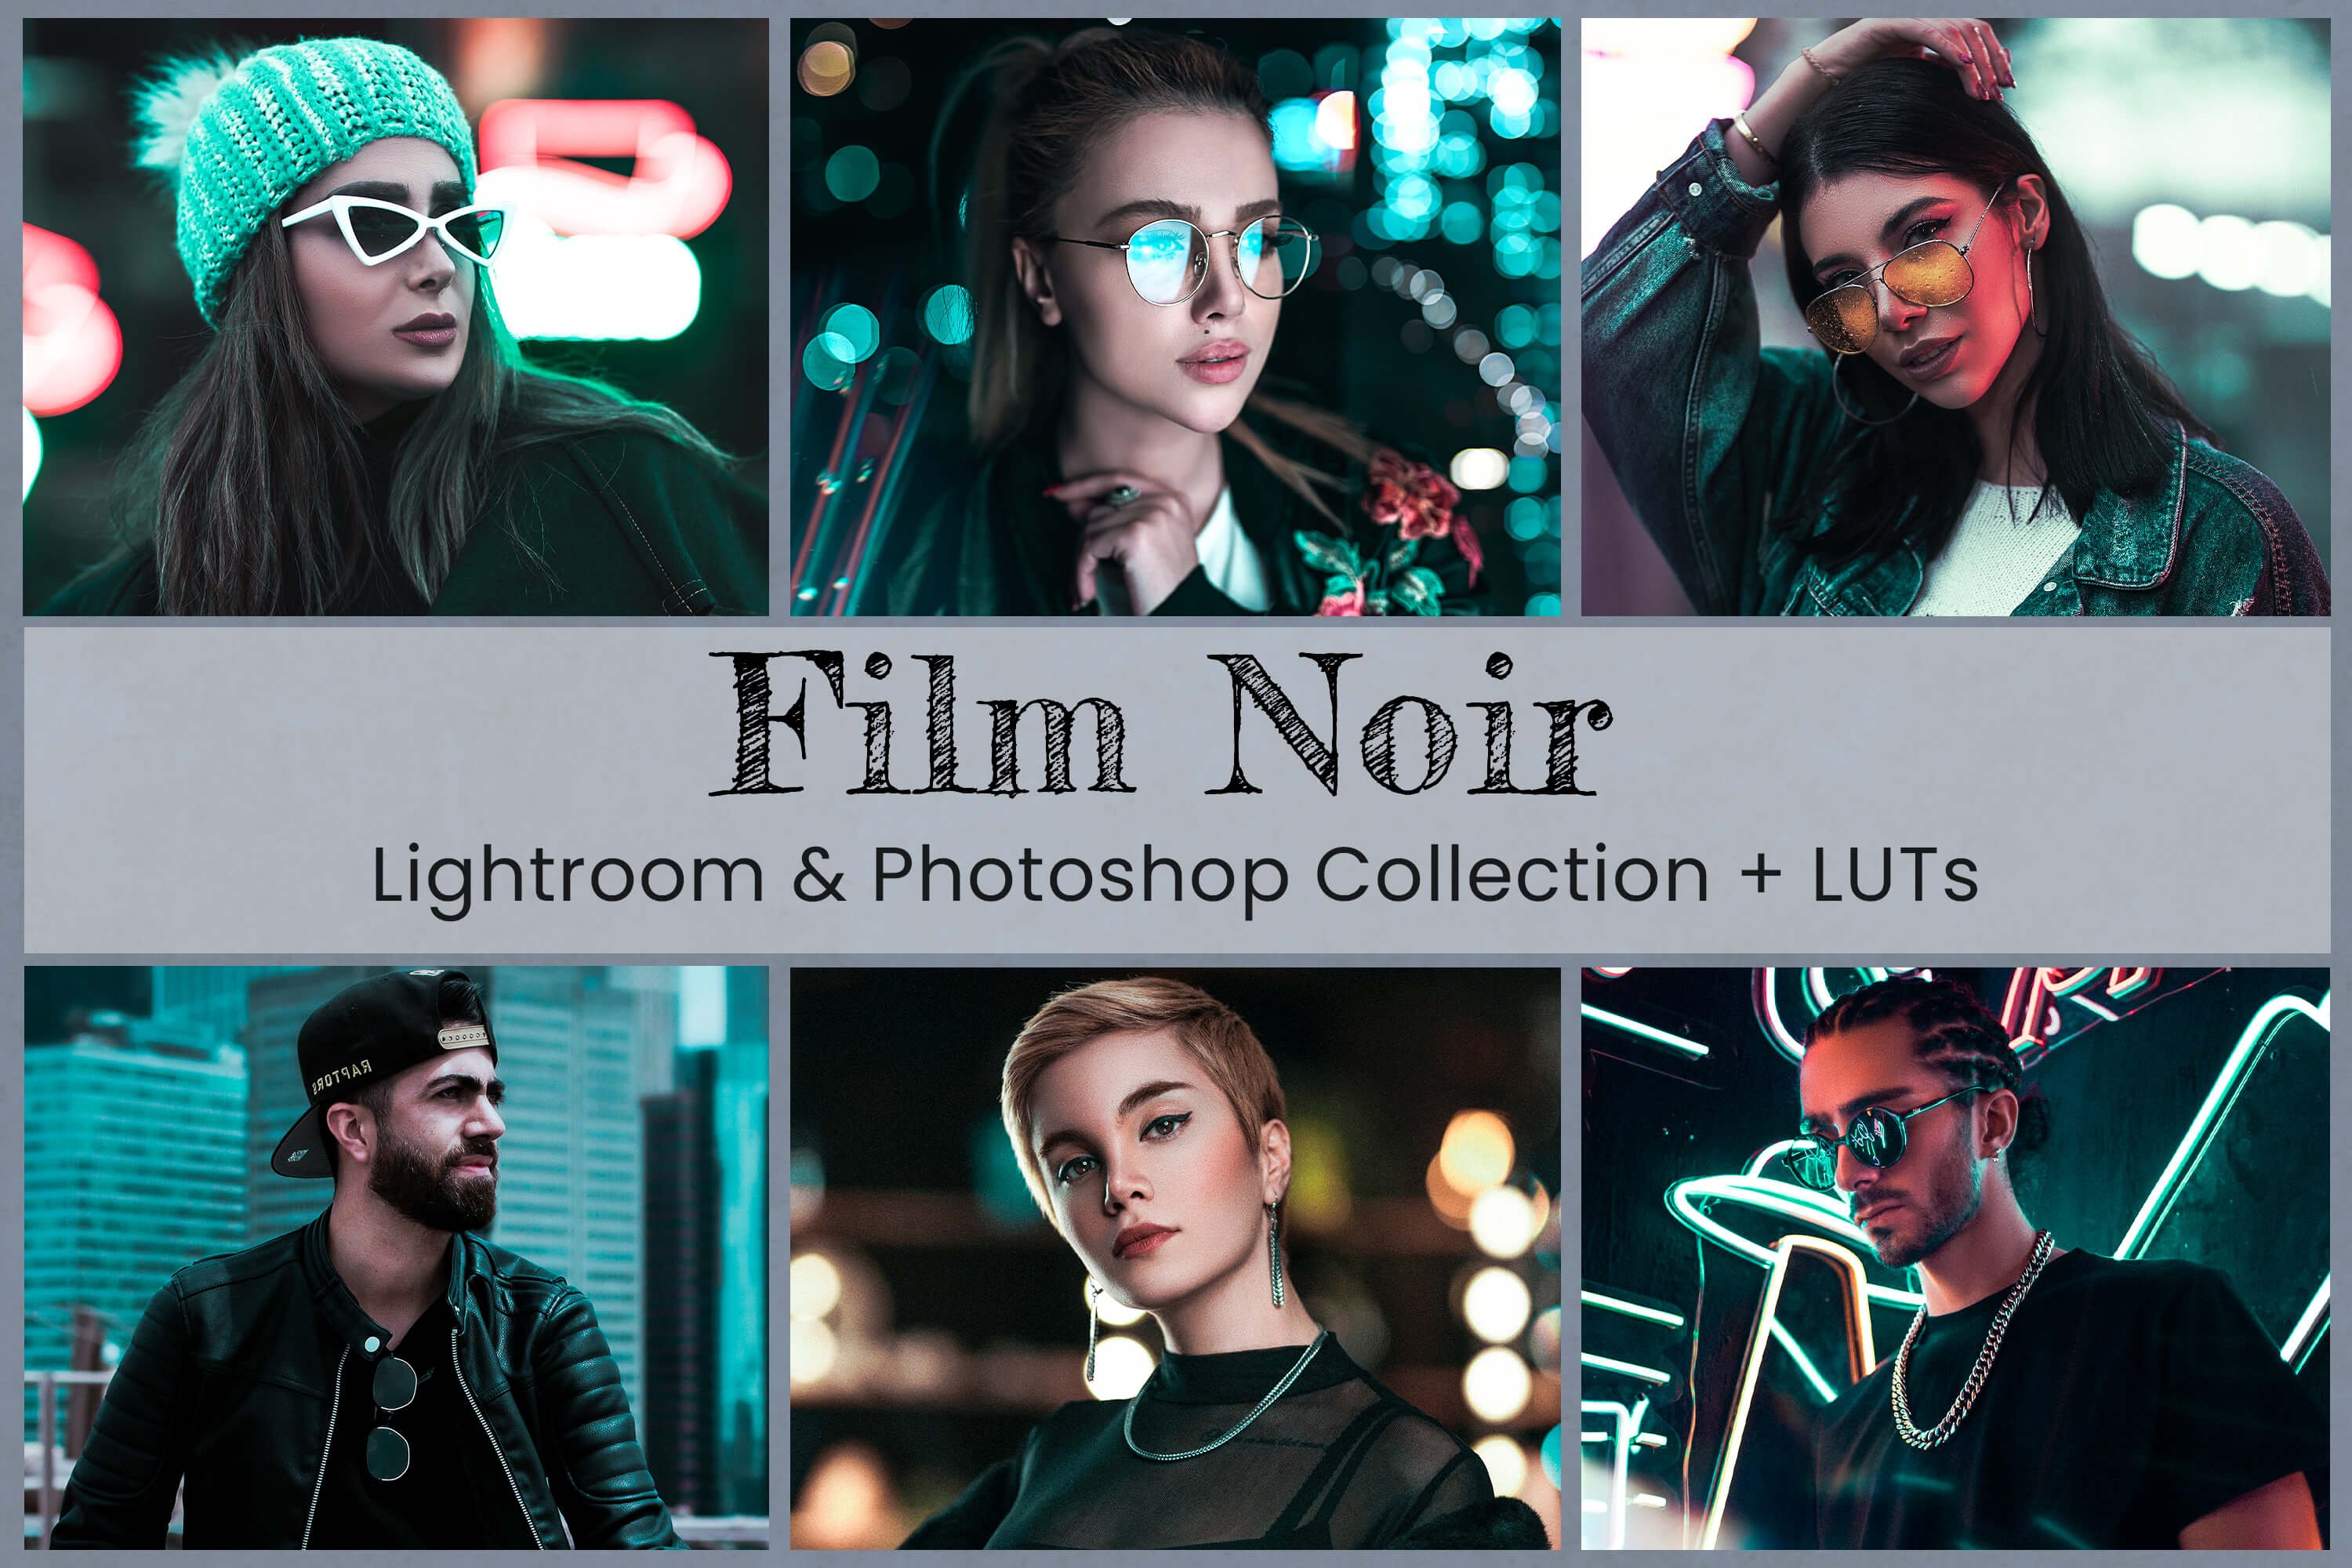 Film Noir Lightroom Photoshop LUTscover image.